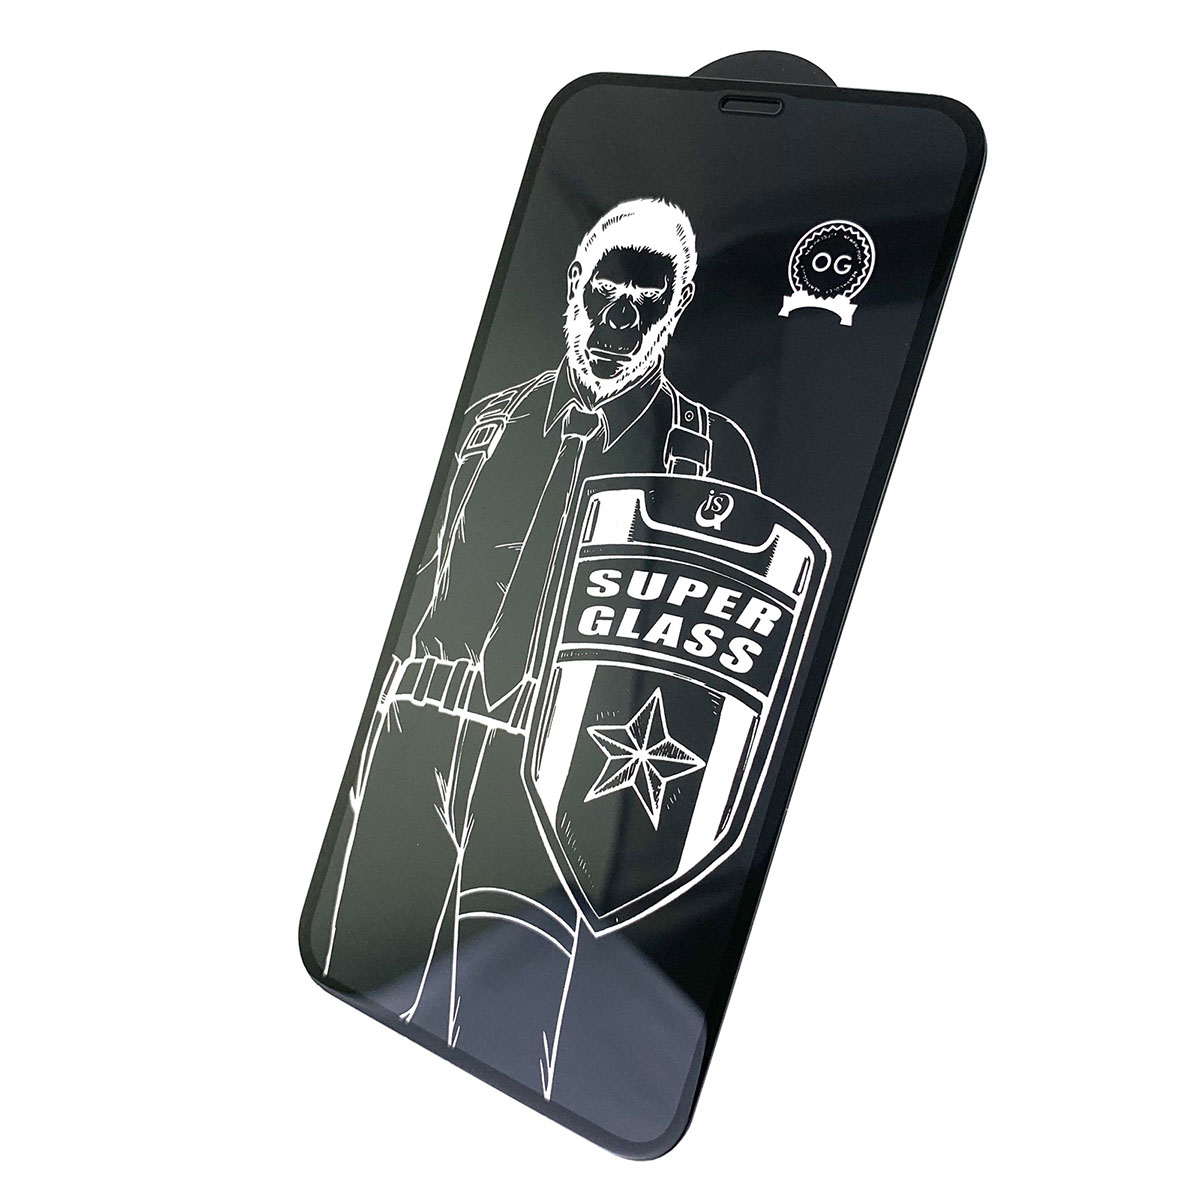 Защитное стекло 5D Super Glass OG для APPLE iPhone XR / 11 (6.1"), цвет канта черный.